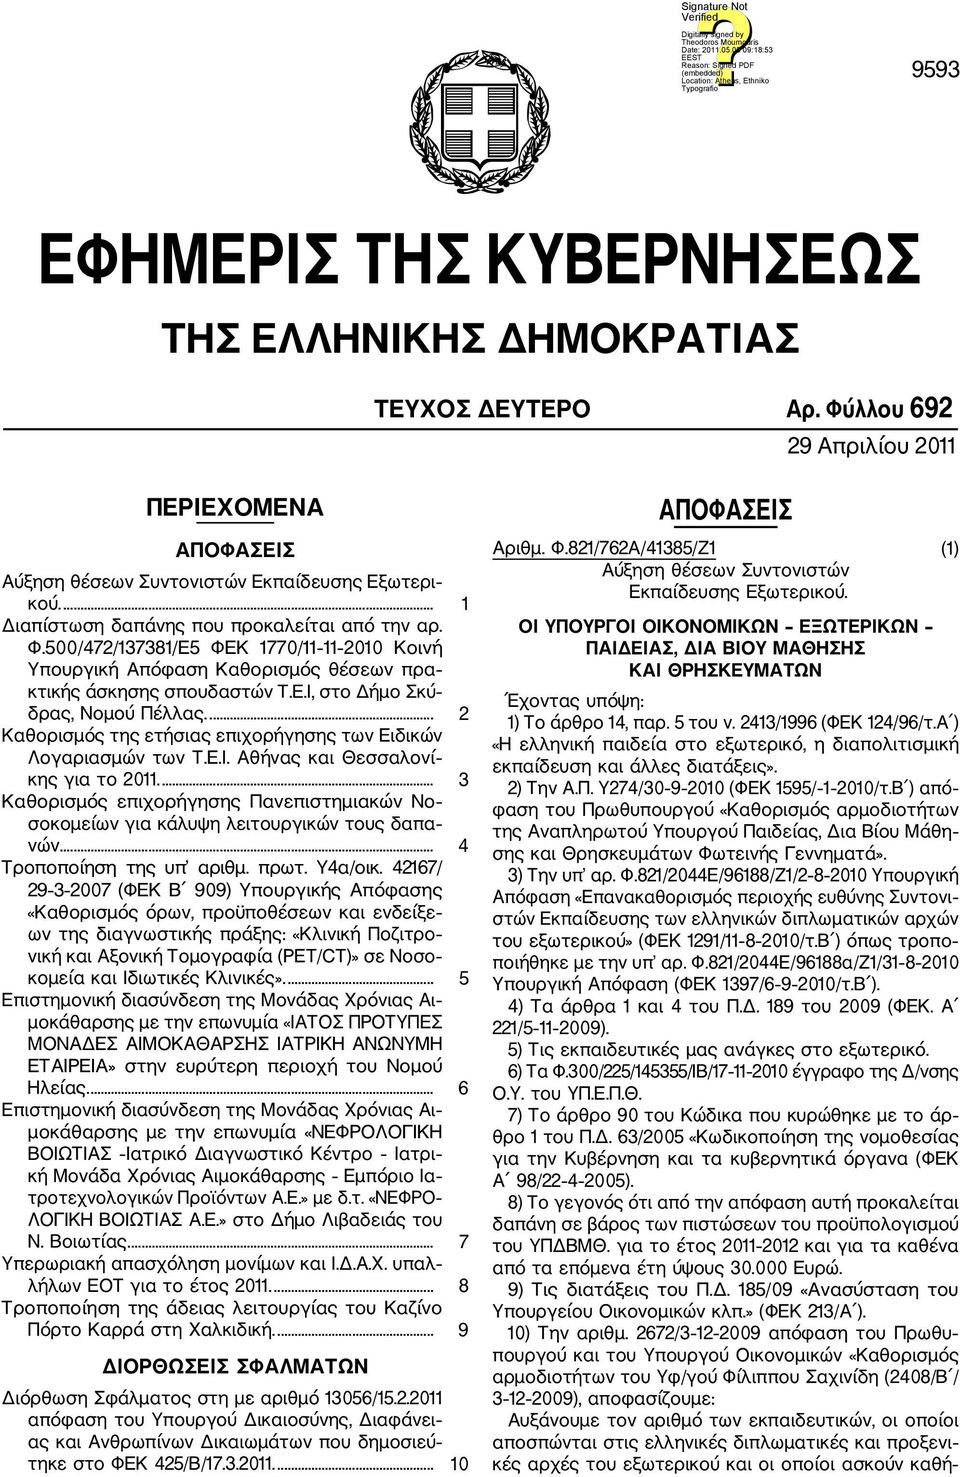 ... 2 Καθορισμός της ετήσιας επιχορήγησης των Ειδικών Λογαριασμών των Τ.Ε.Ι. Αθήνας και Θεσσαλονί κης για το 2011.